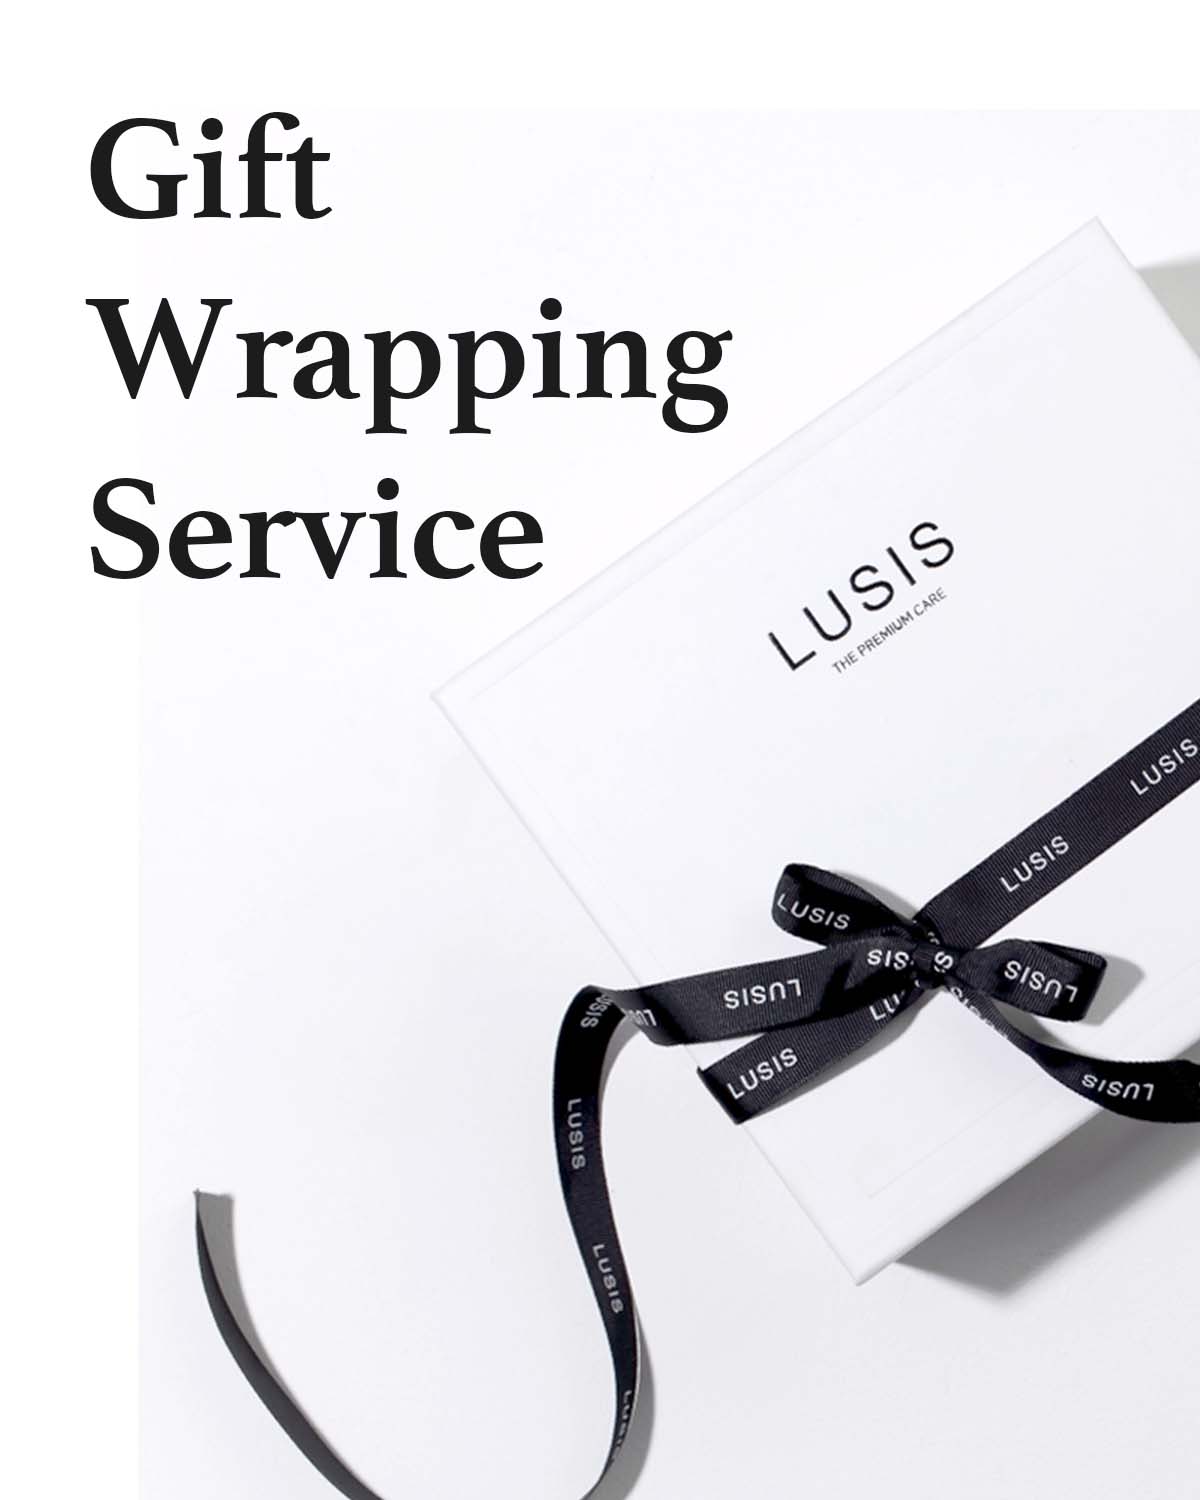 Gift Wrapping Service